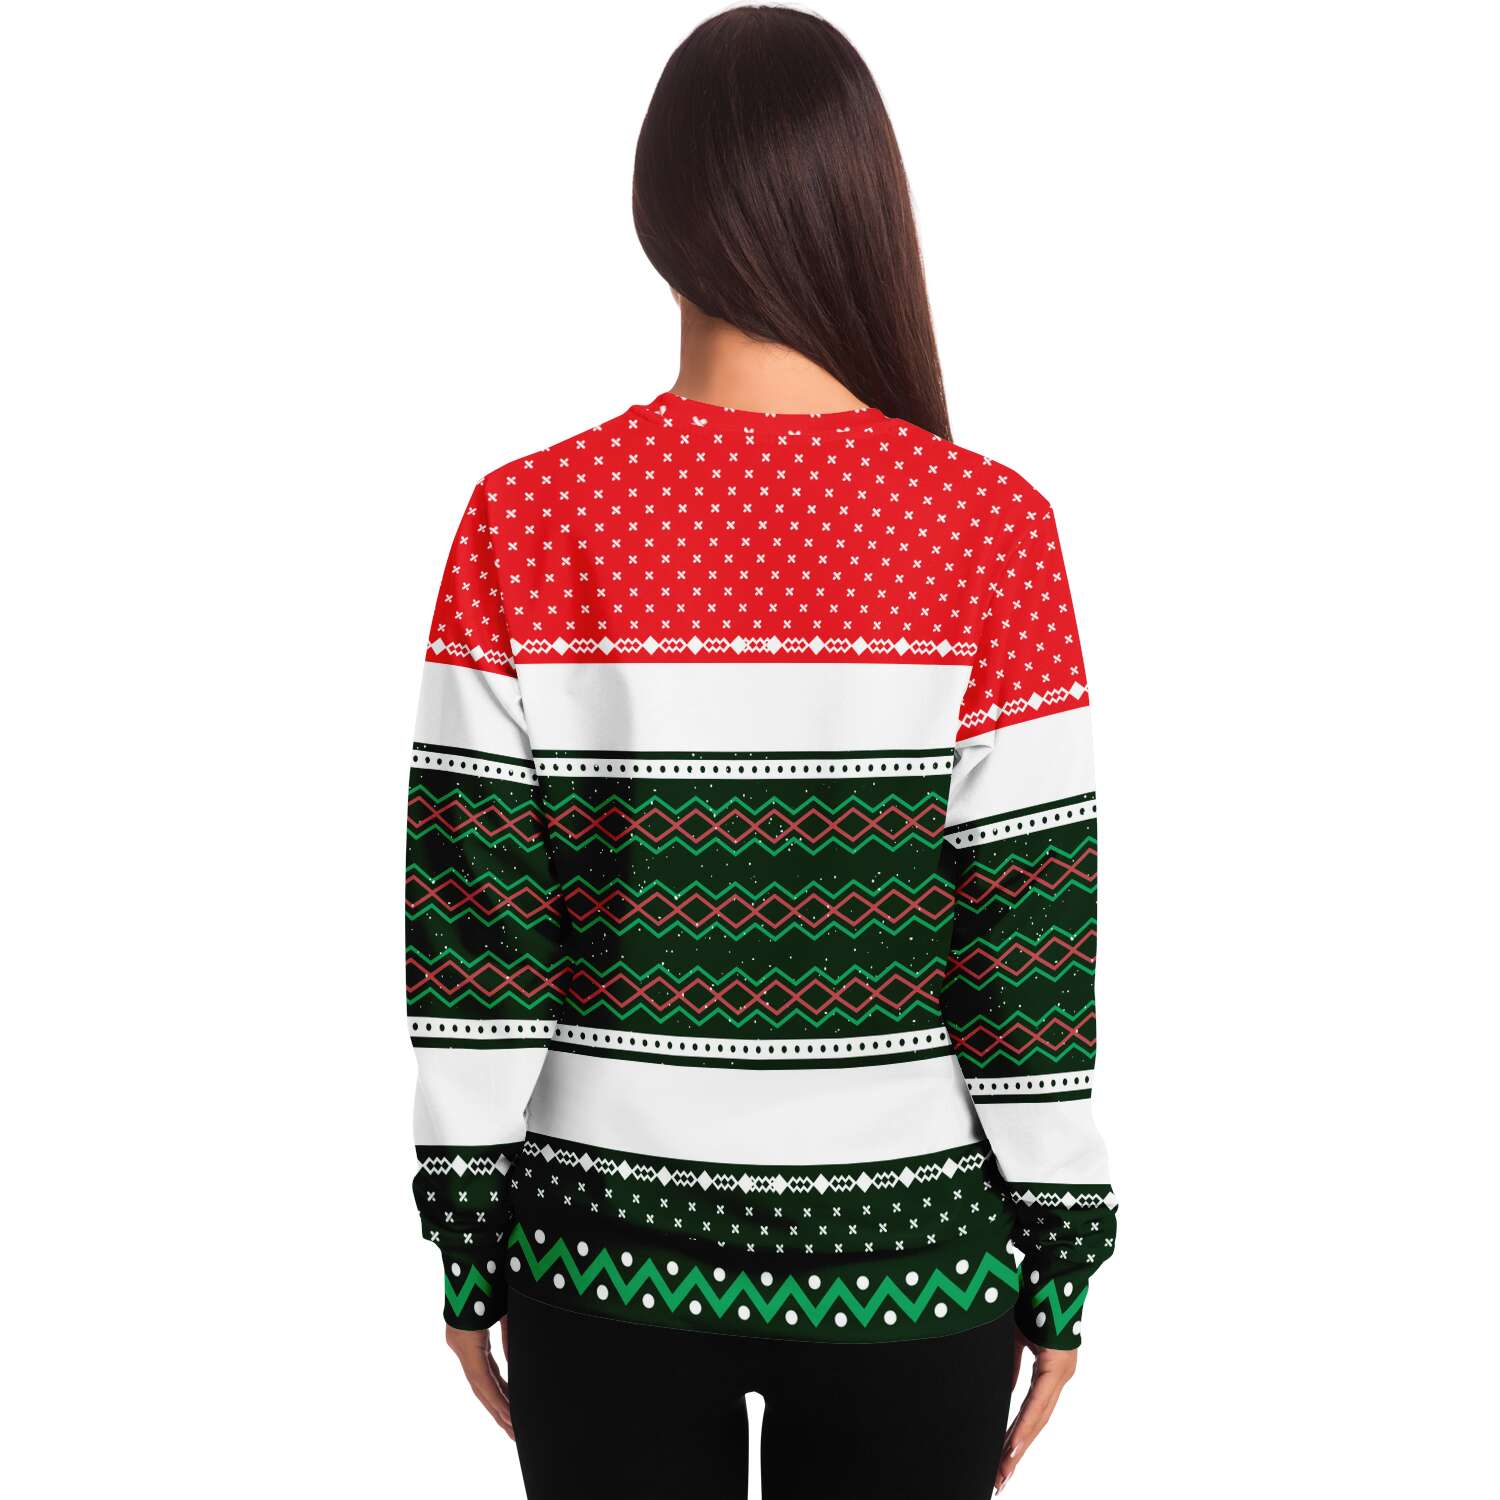 Magical Unicorn Sweatshirt | Unisex Ugly Christmas Sweater, Xmas Sweater, Holiday Sweater, Festive Sweater, Funny Sweater, Funny Party Shirt